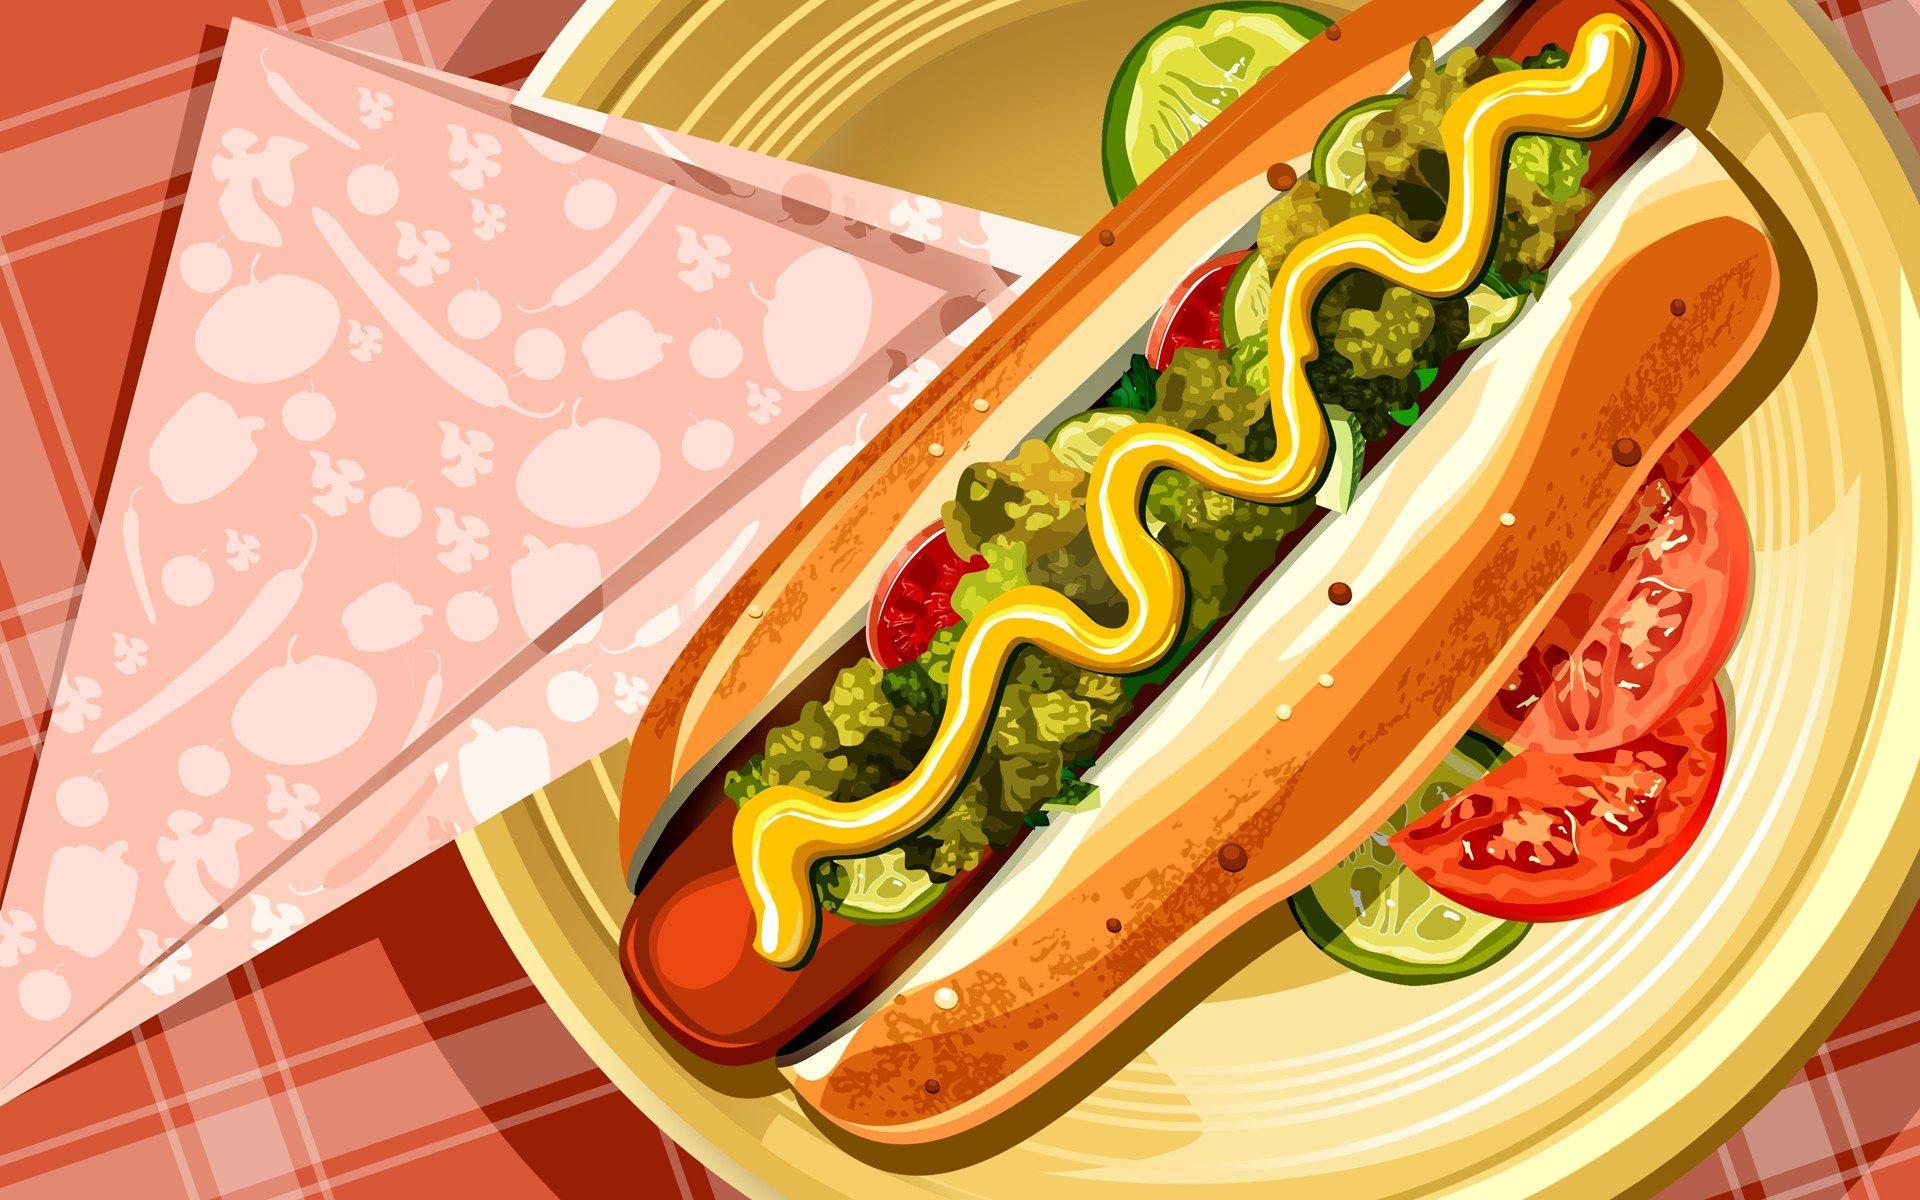 1920x1200 PSD Hình minh họa thức ăn 3126 hot dog minh họa hotdog